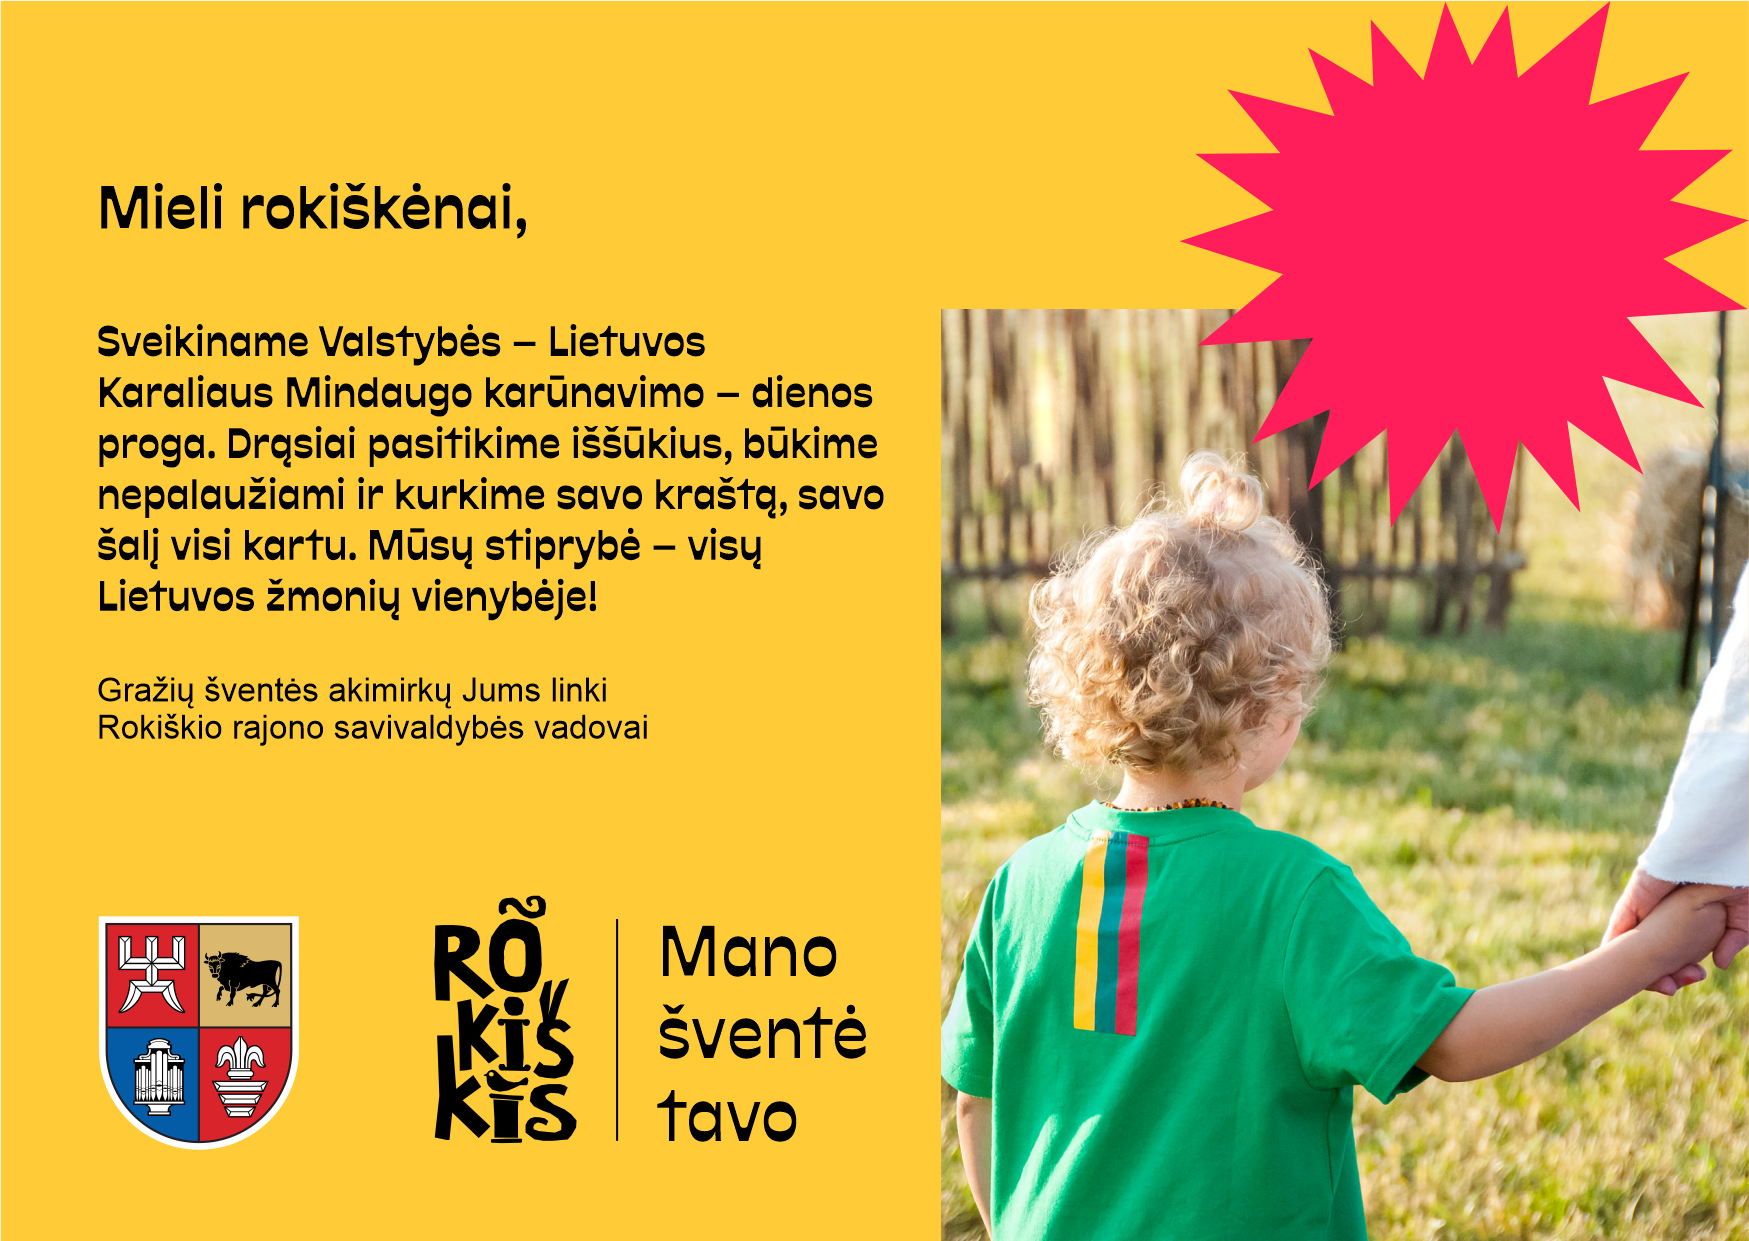 Sveikiname Valstybės – Lietuvos Karaliaus Mindaugo karūnavimo – dienos proga!